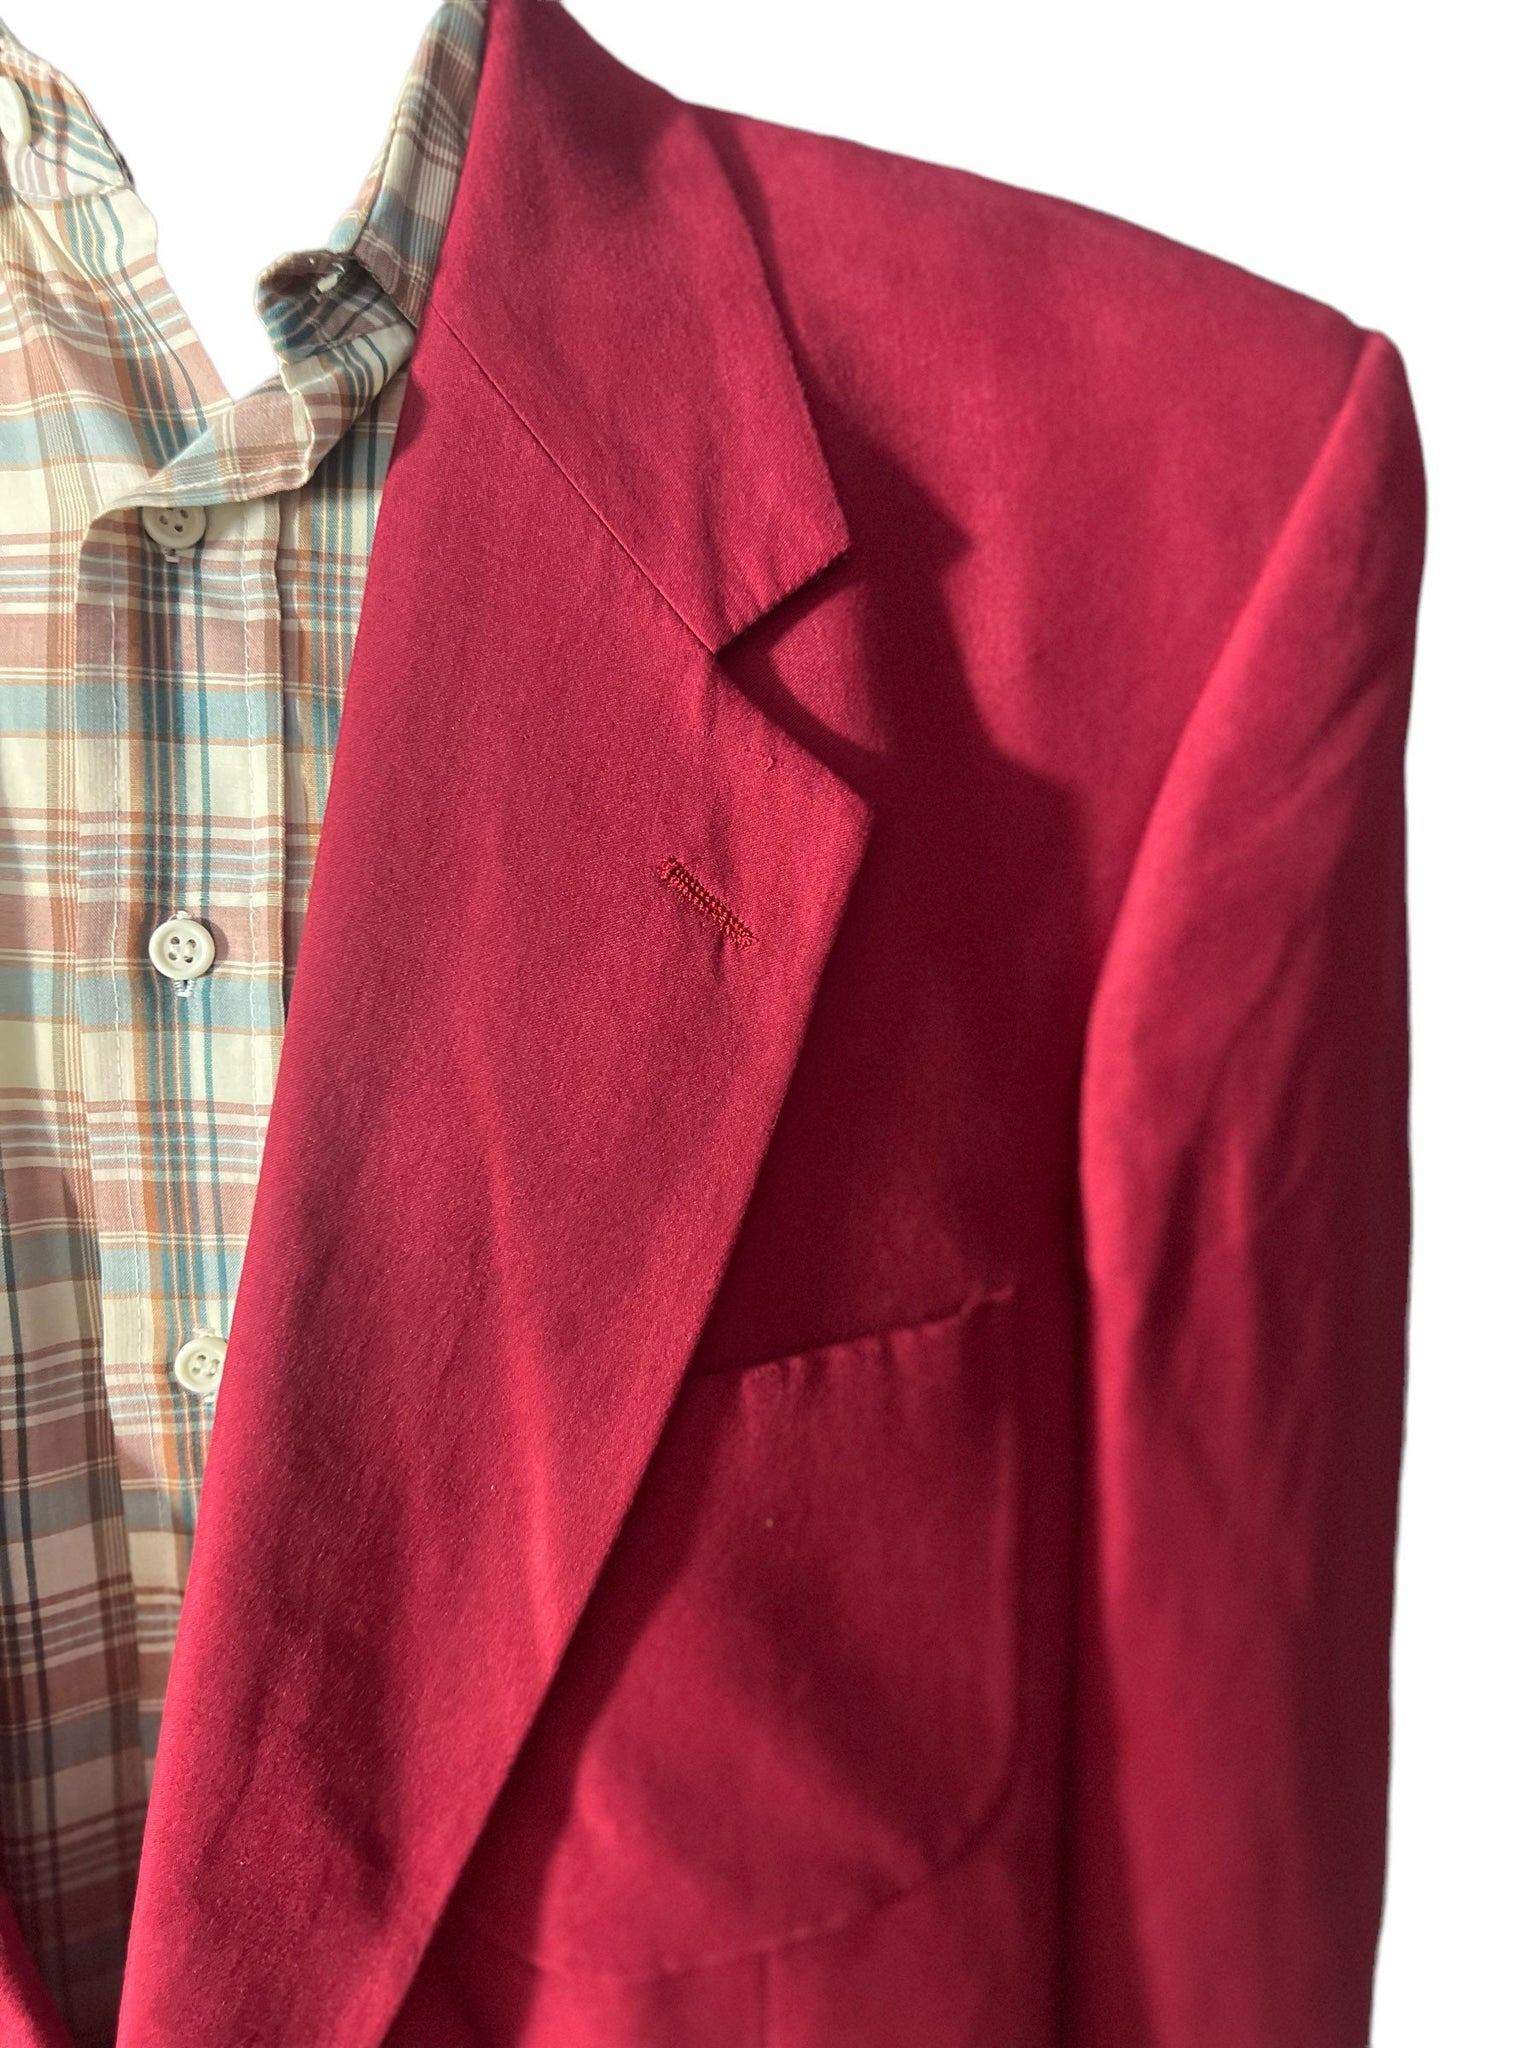 Vintage ultra suede red men's suit jacket 44